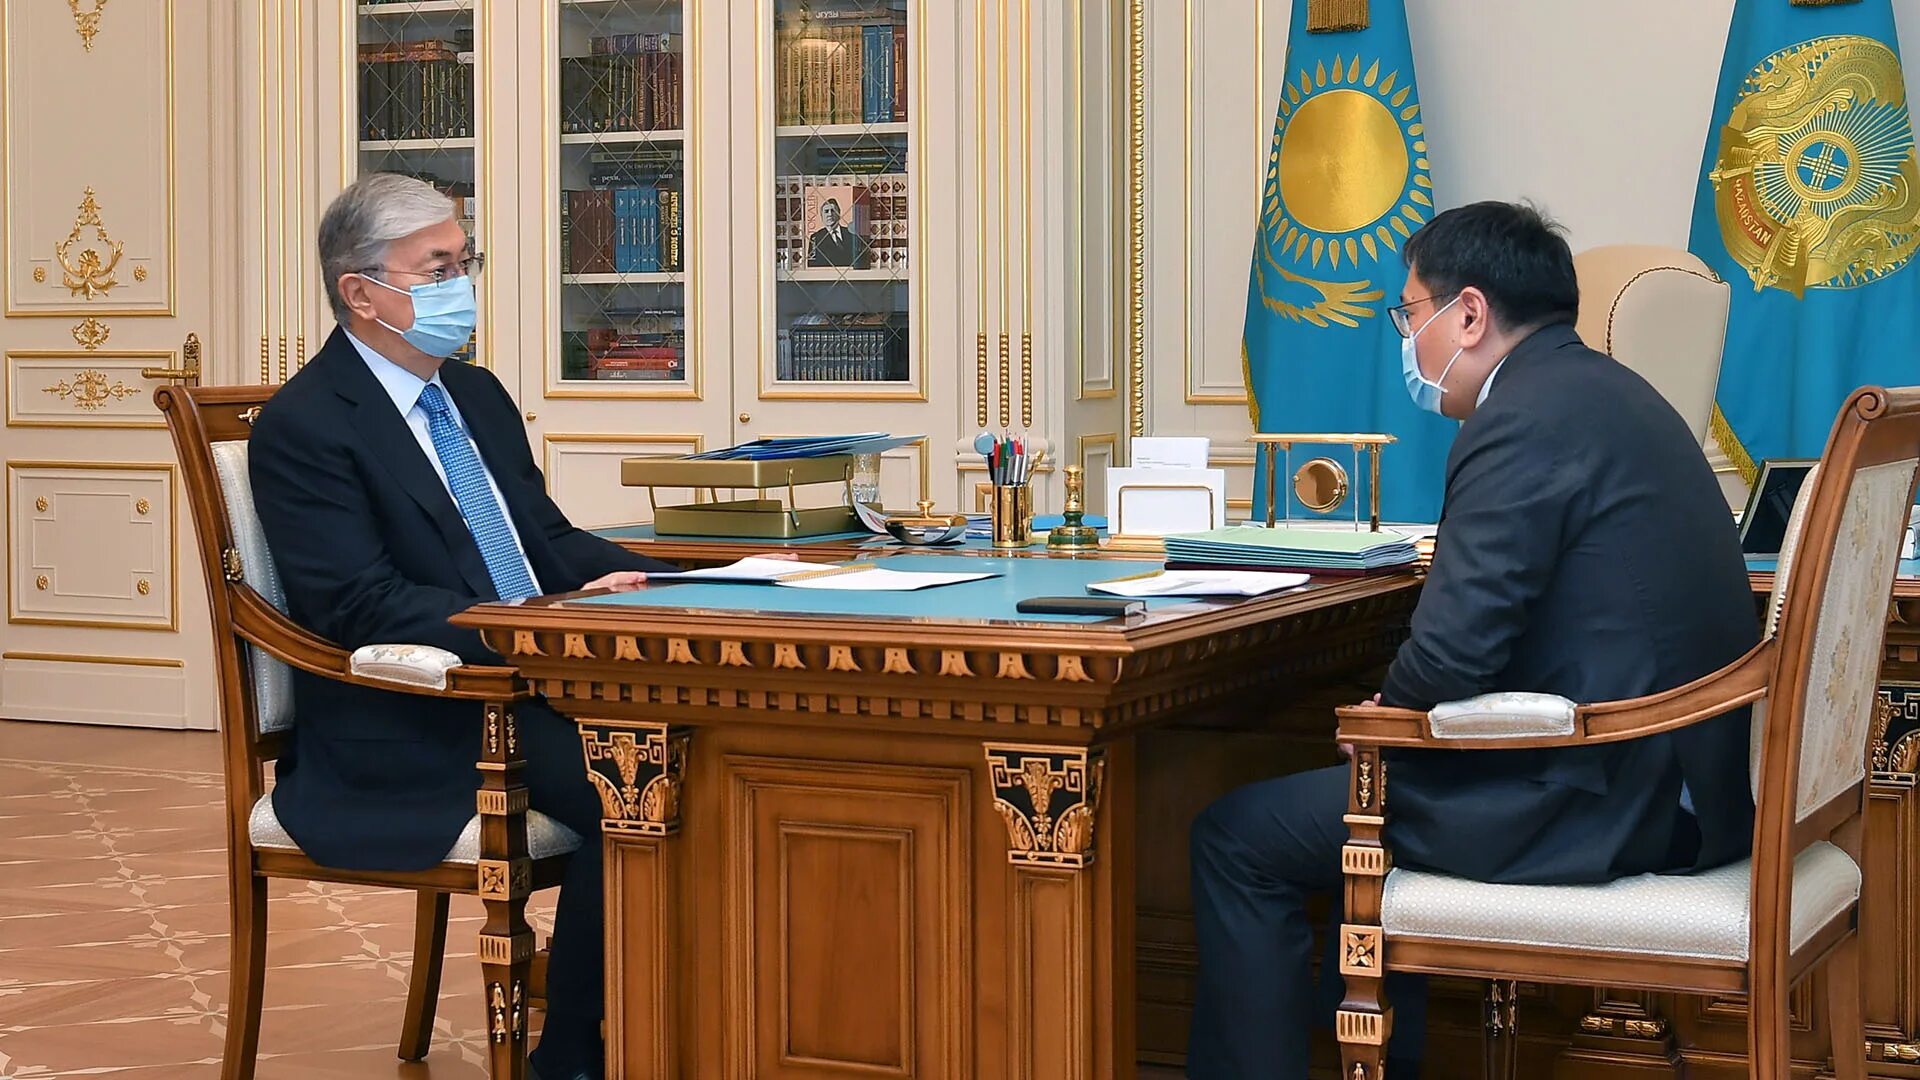 Председатель национального банка РК. Кабинет президента Казахстана. Национальный банк Казахстана.